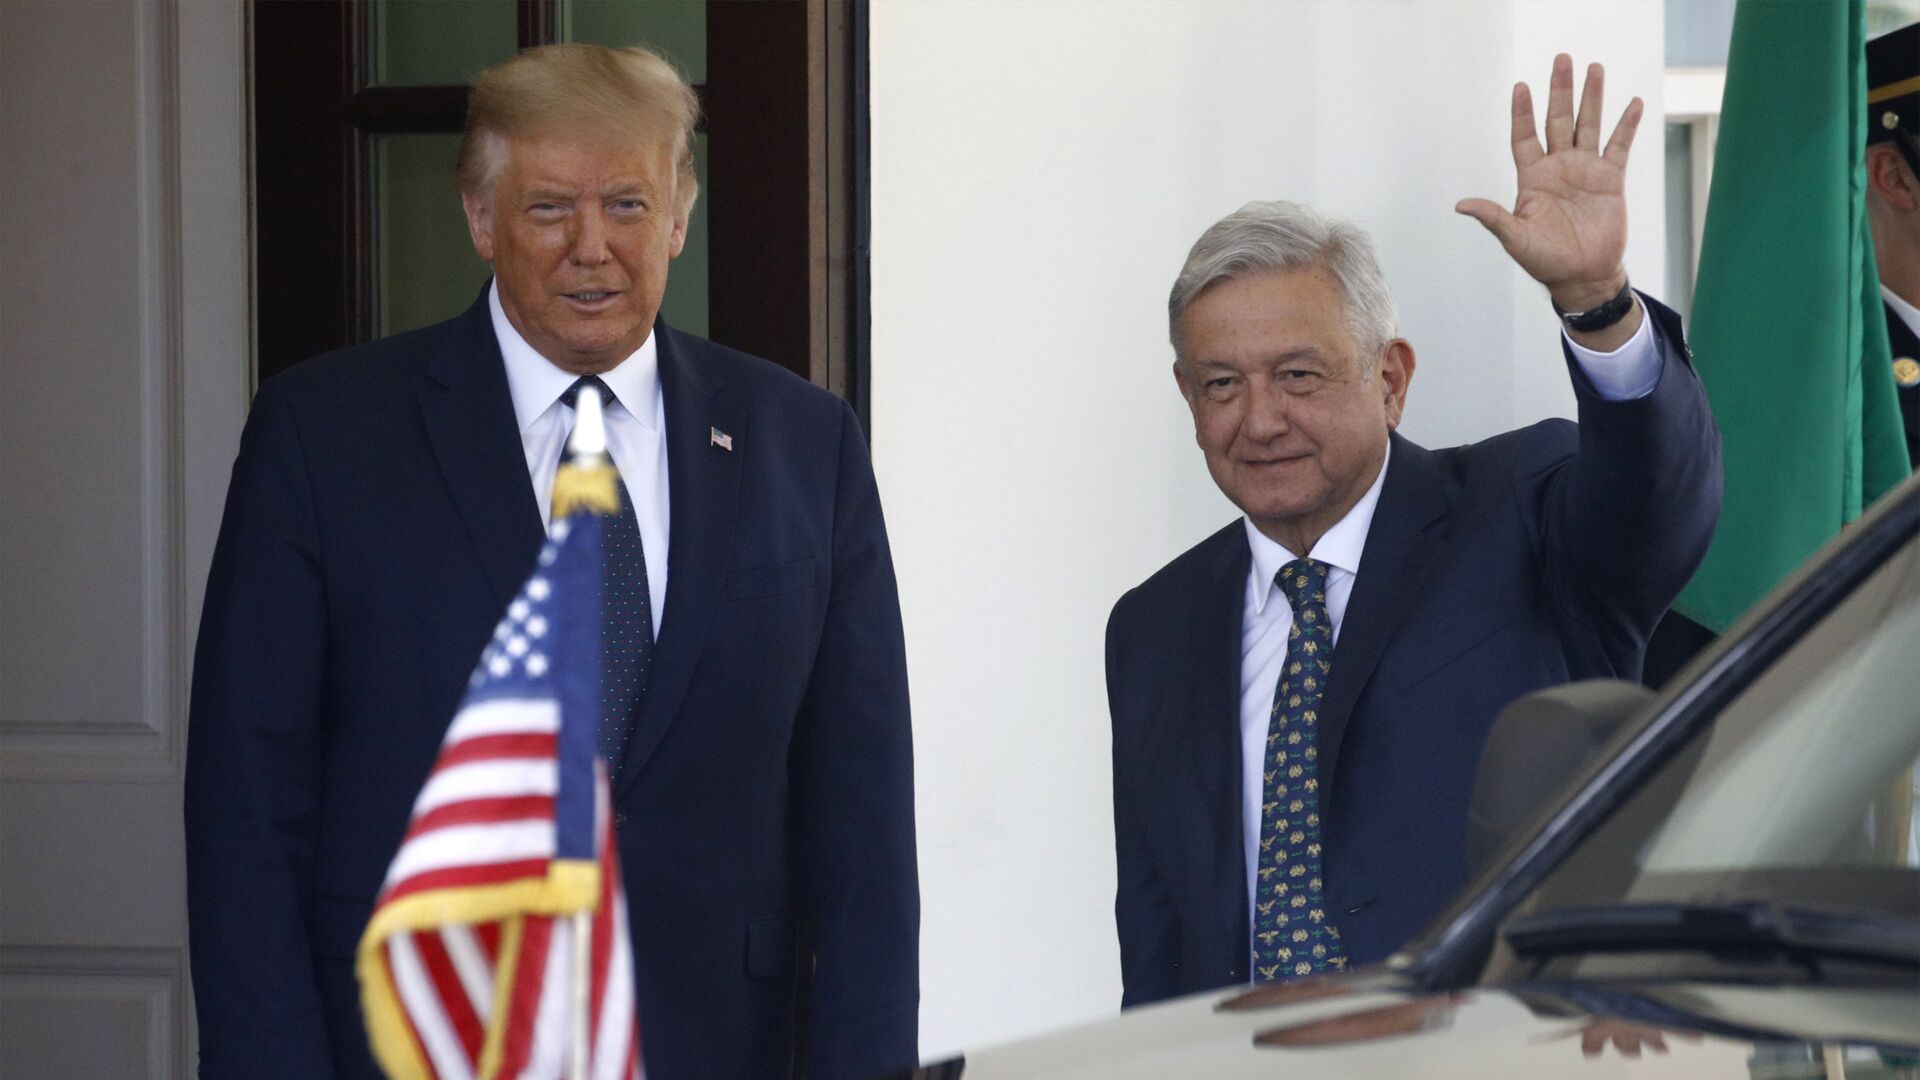 El presidente de EEUU, Donald Trump, con el presidente de México, Andrés Manuel López Obrador (archivo) - Sputnik Mundo, 1920, 14.04.2021